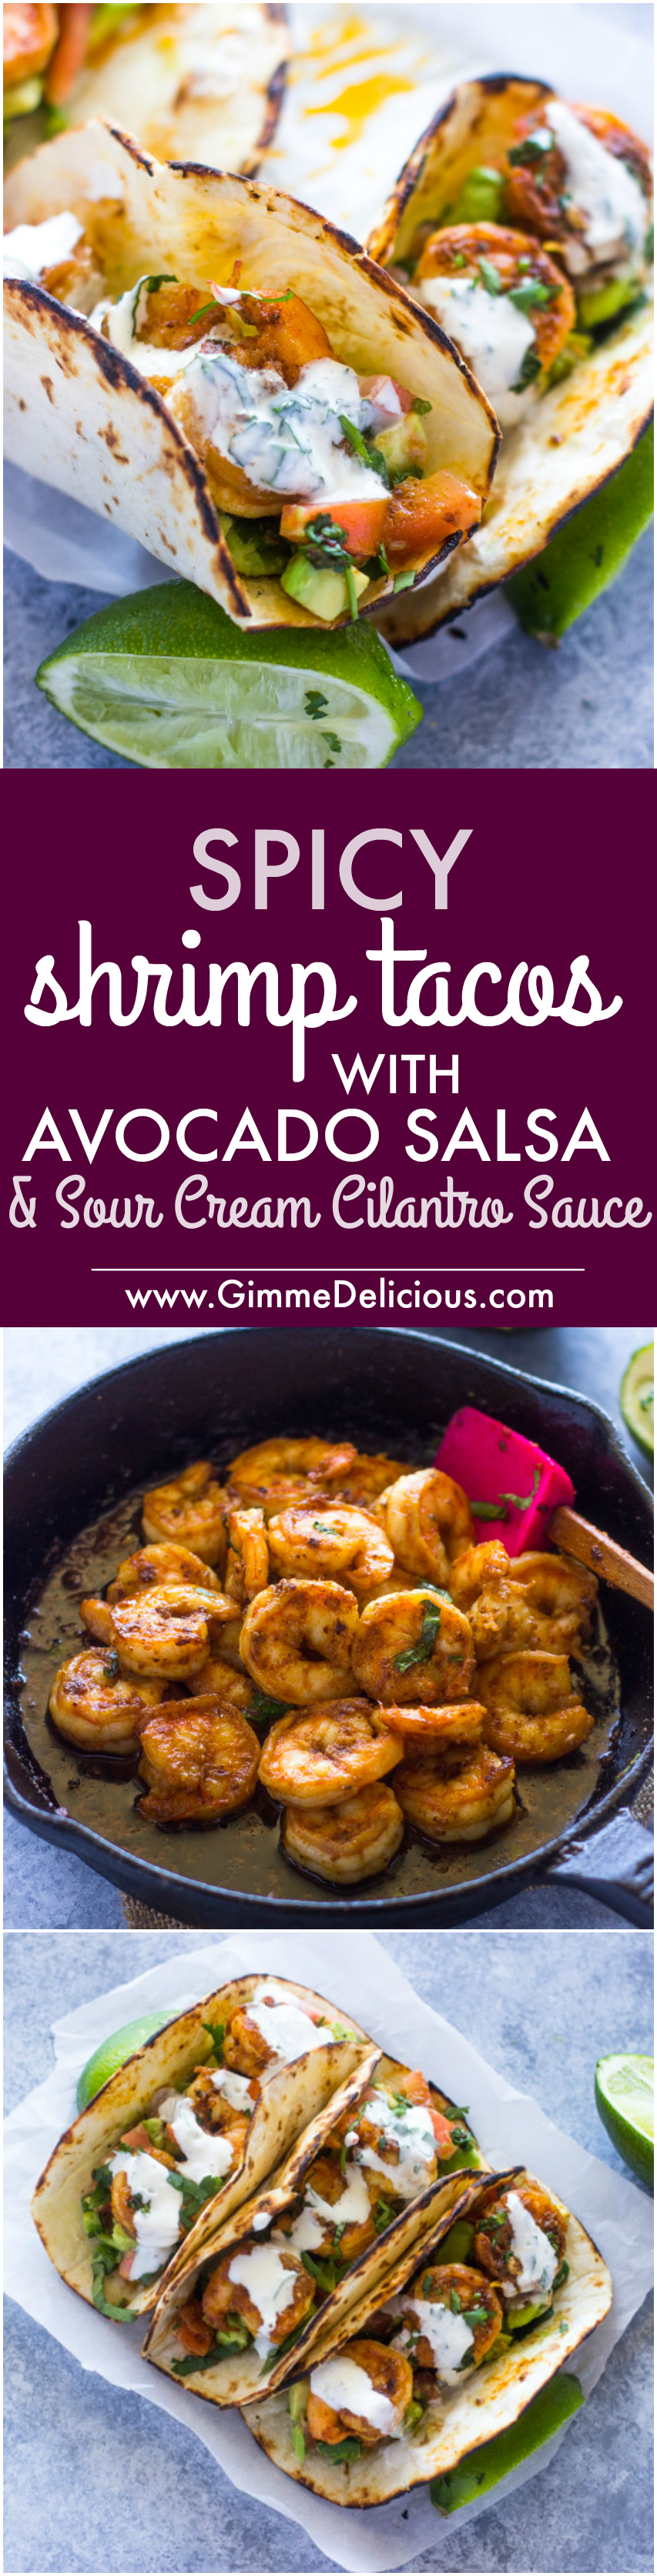 Spicy Shrimp Tacos with Avocado Salsa & Sour Cream Cilantro Sauce